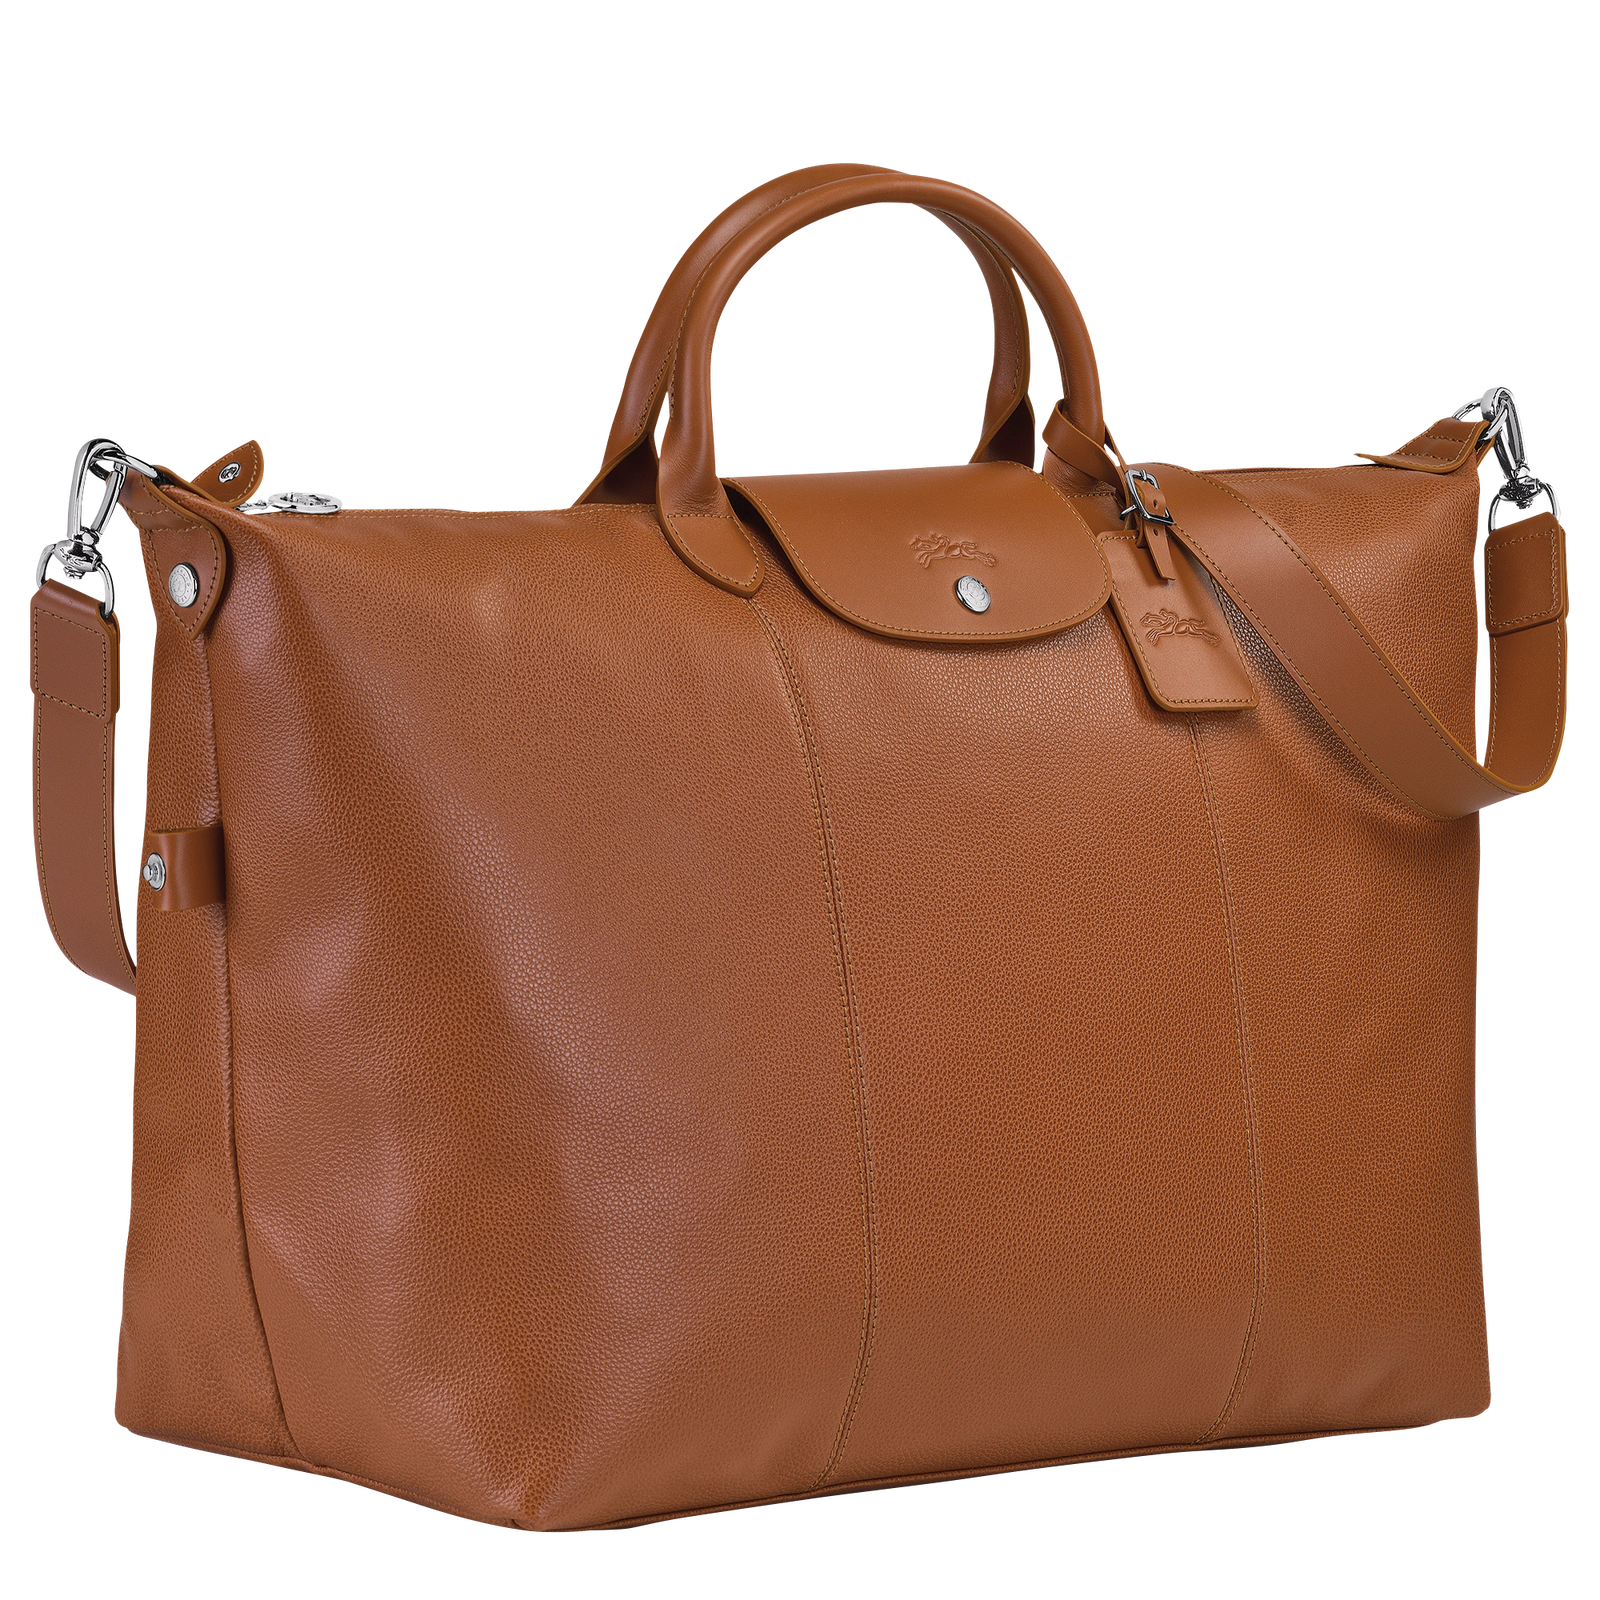 Le Foulonné 系列 旅行袋 S, 淡紅褐色